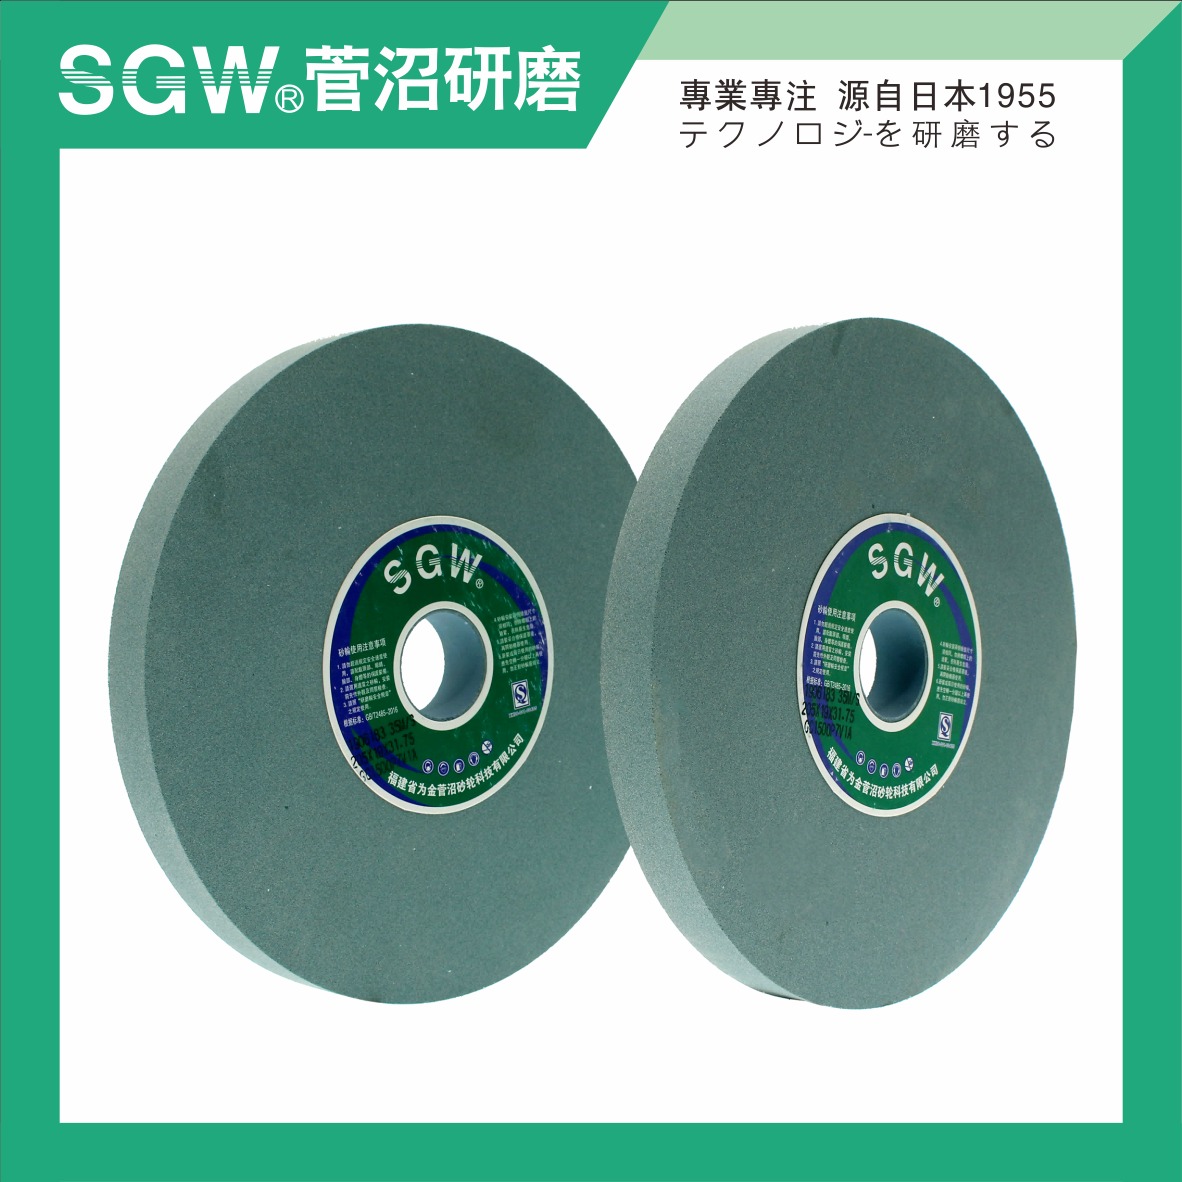 砂轮机 砂轮 绿碳化硅GC 陶瓷 刃具打磨 抛光 磨刀机 硬质合金 平面磨